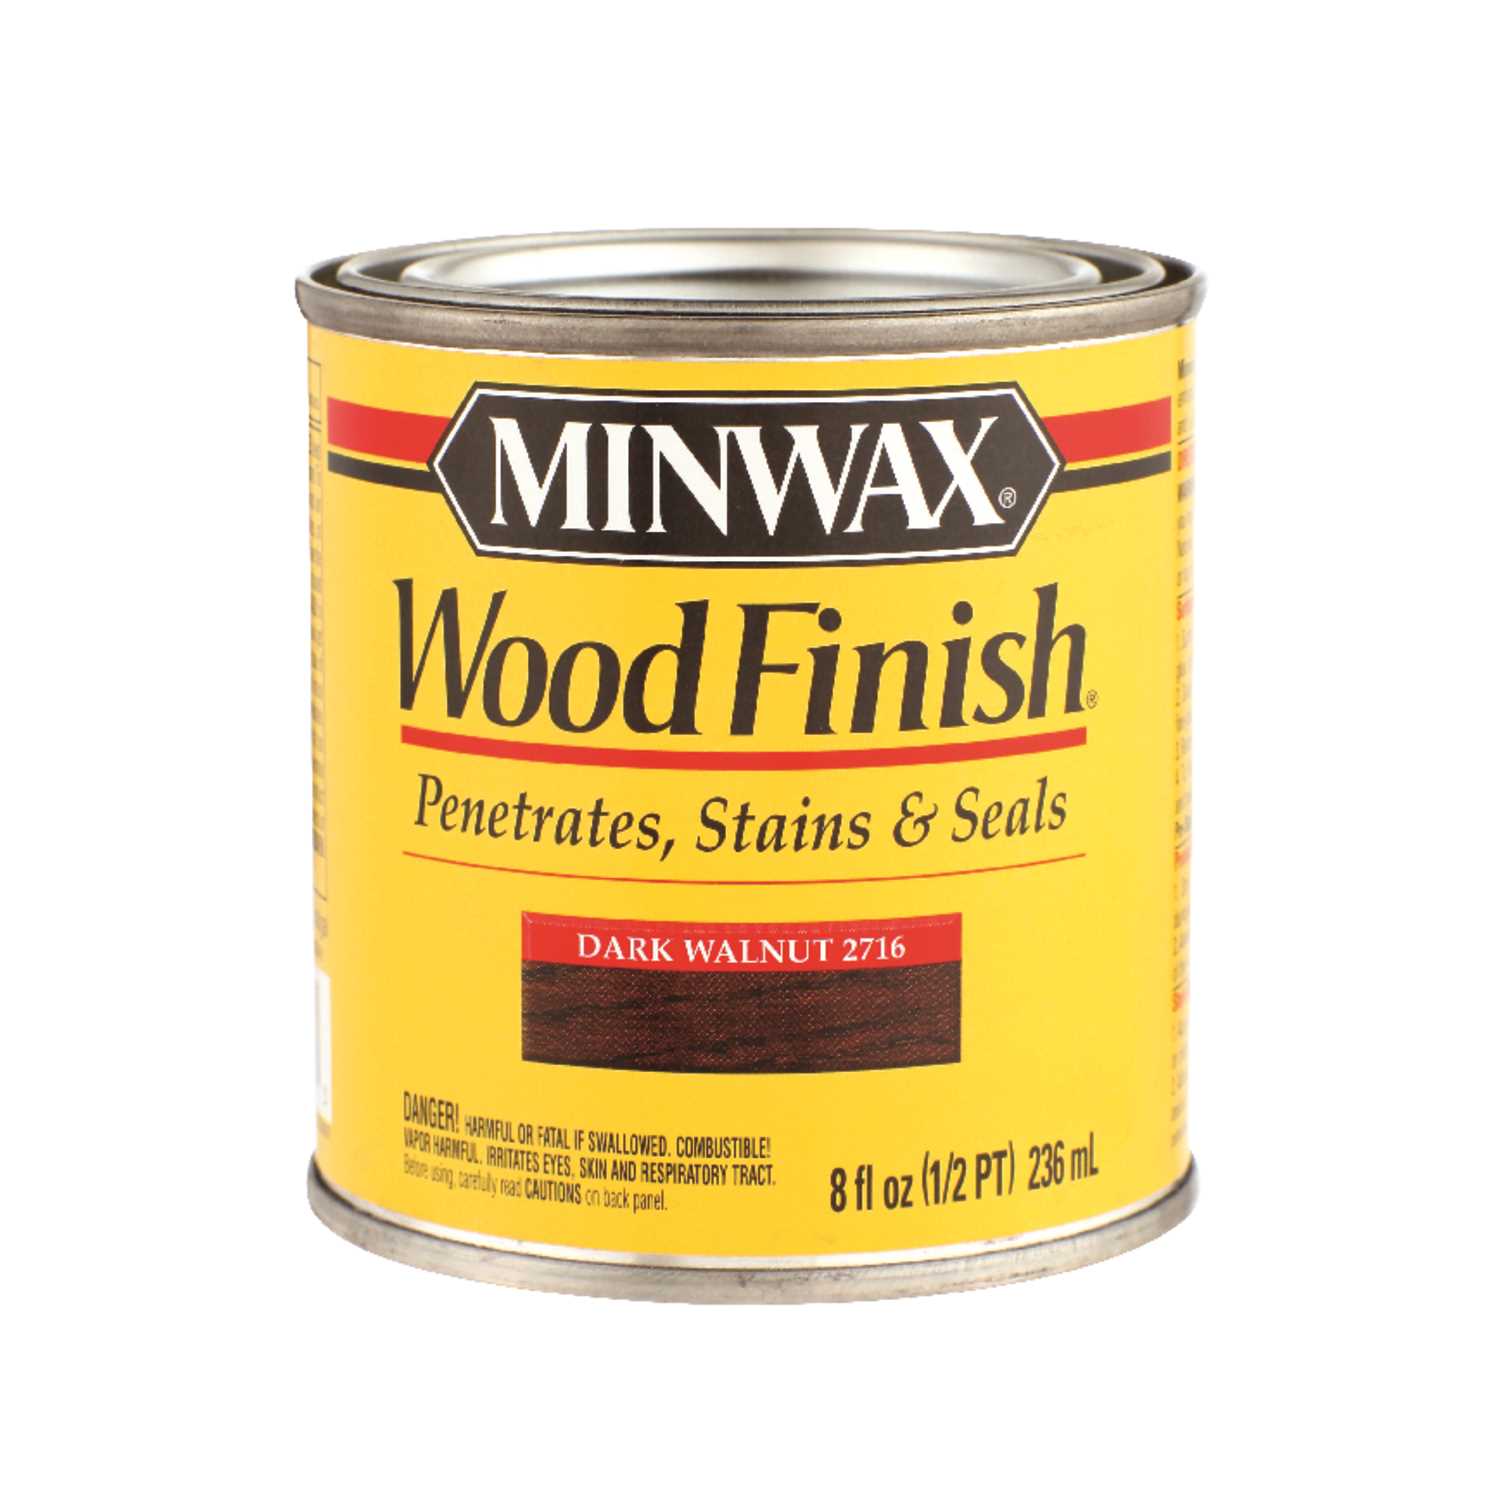 Minwax Logo - Minwax Wood Finish Semi Transparent Dark Walnut Oil Based Wood Stain